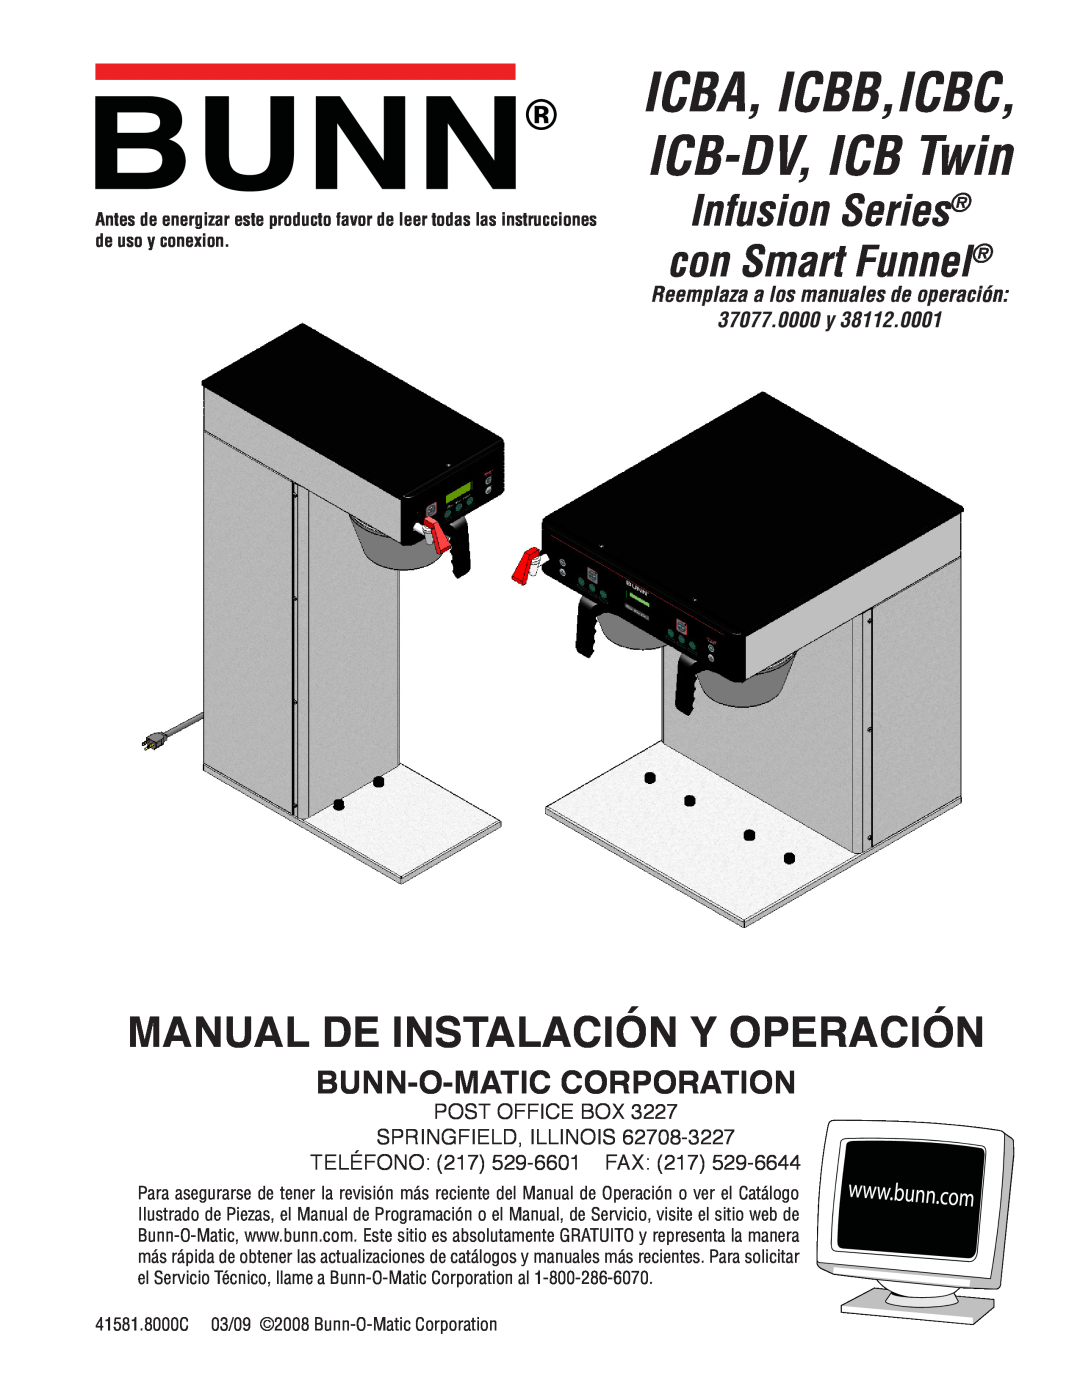 Bunn manual ICBA, ICBB,ICBC, ICB-DV, ICB Twin, Infusion Series con Smart Funnel, Manual De Instalación Y Operación 